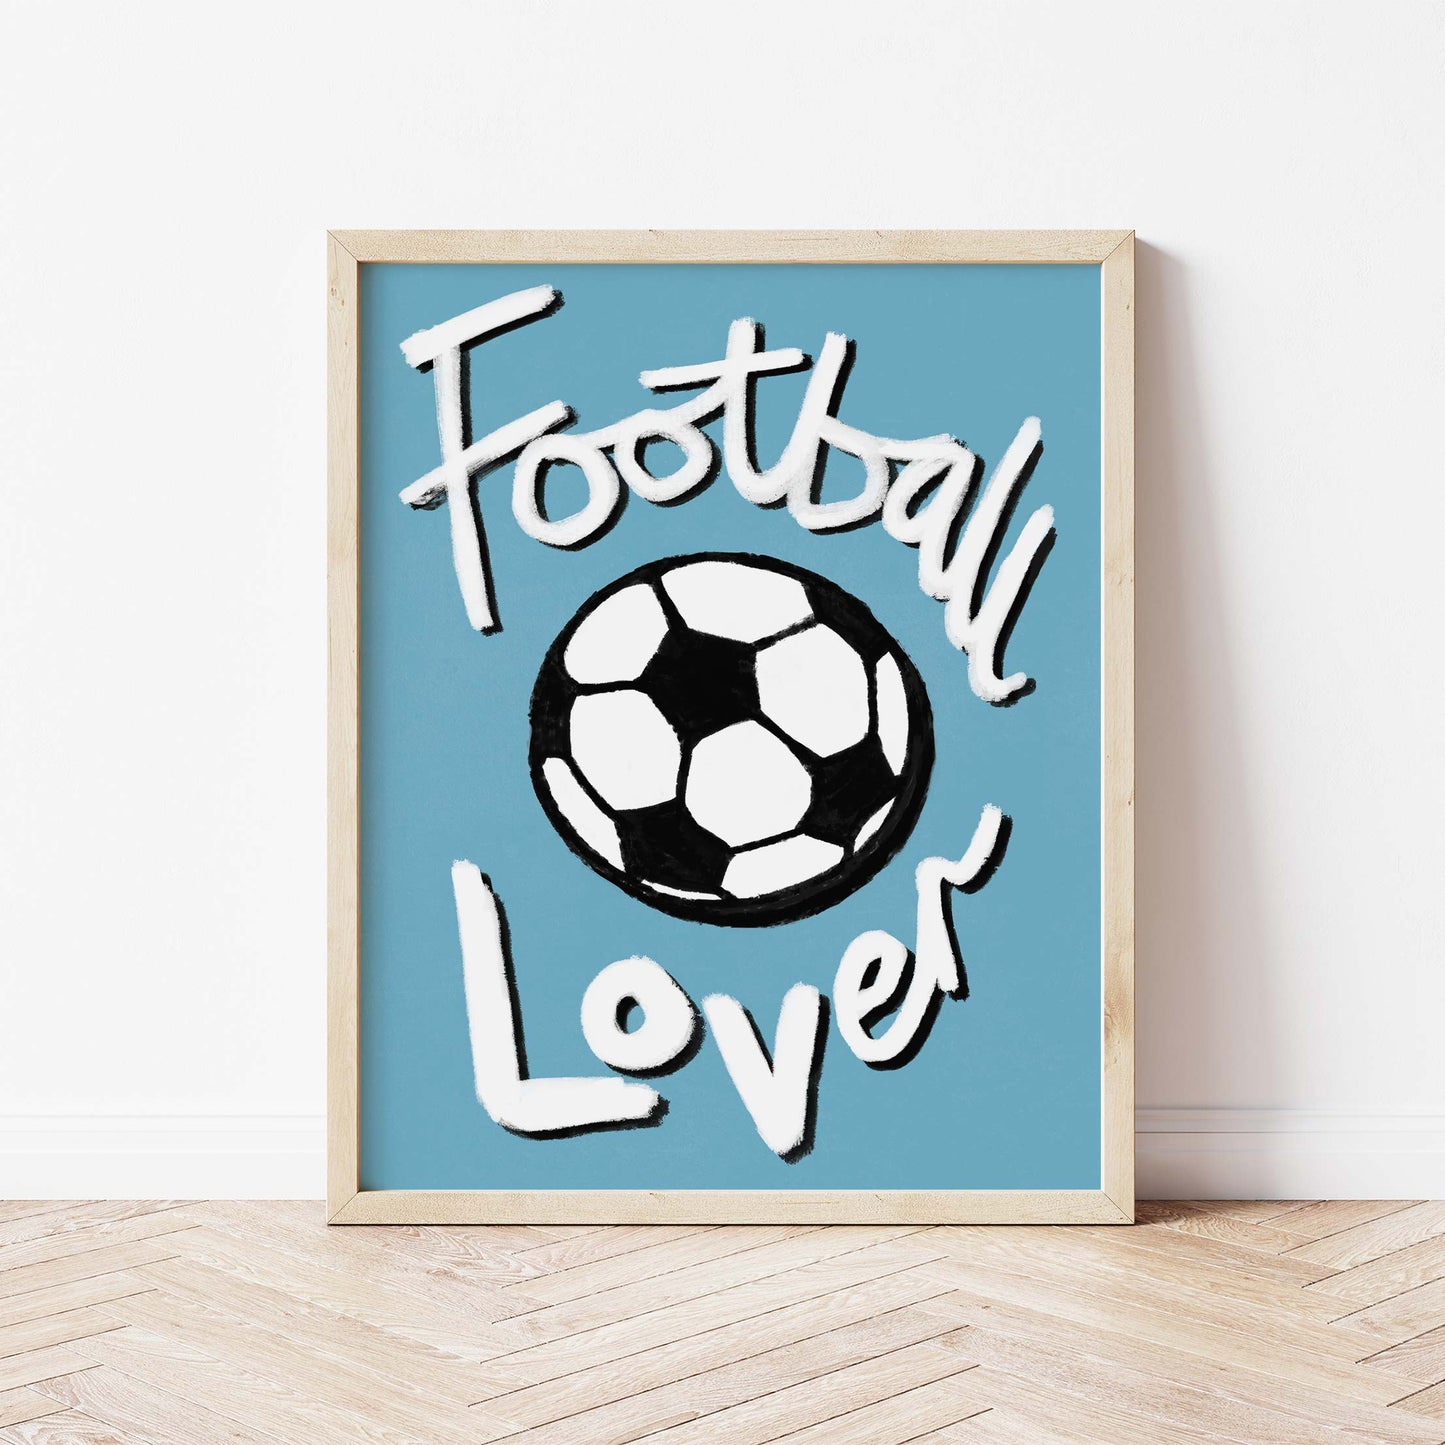 Football Lover Print - Blue, White, Black Framed Print